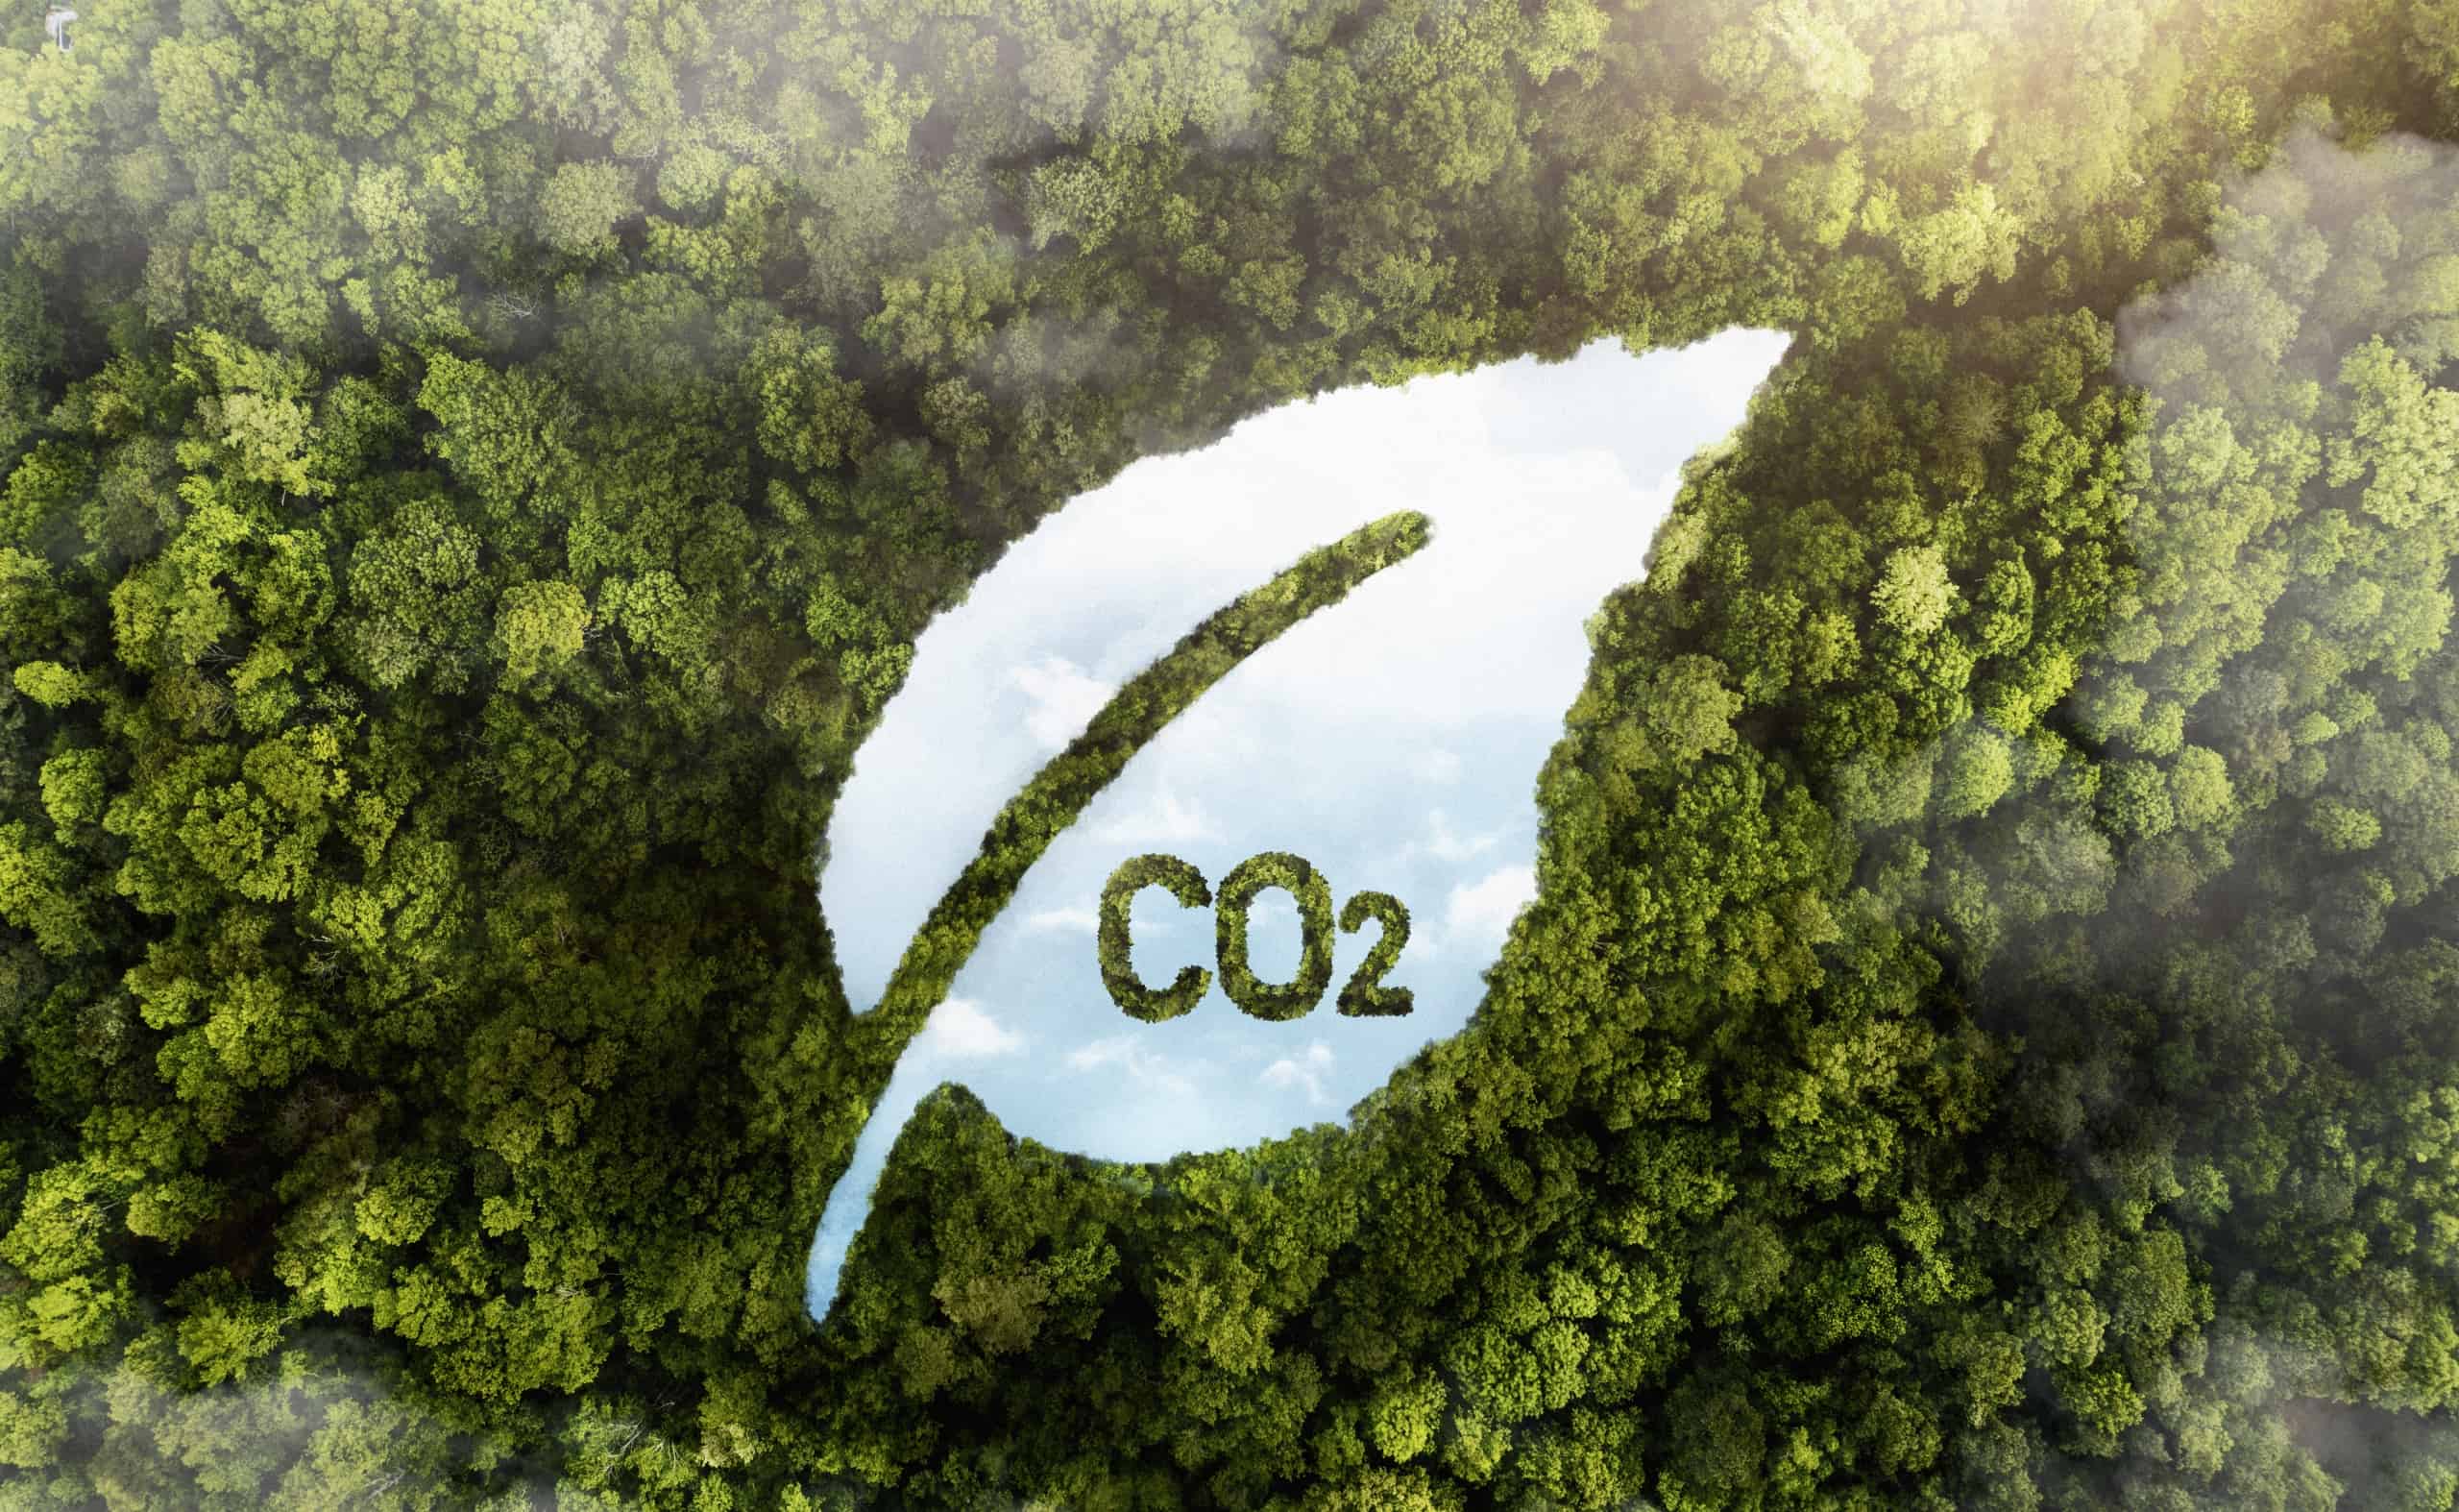 عرض أشجار الغابات الخضراء مع تحجيم ثاني أكسيد الكربون - ميزات متقدمة لتخصيص عمليات تصنيع المناديل المبللة